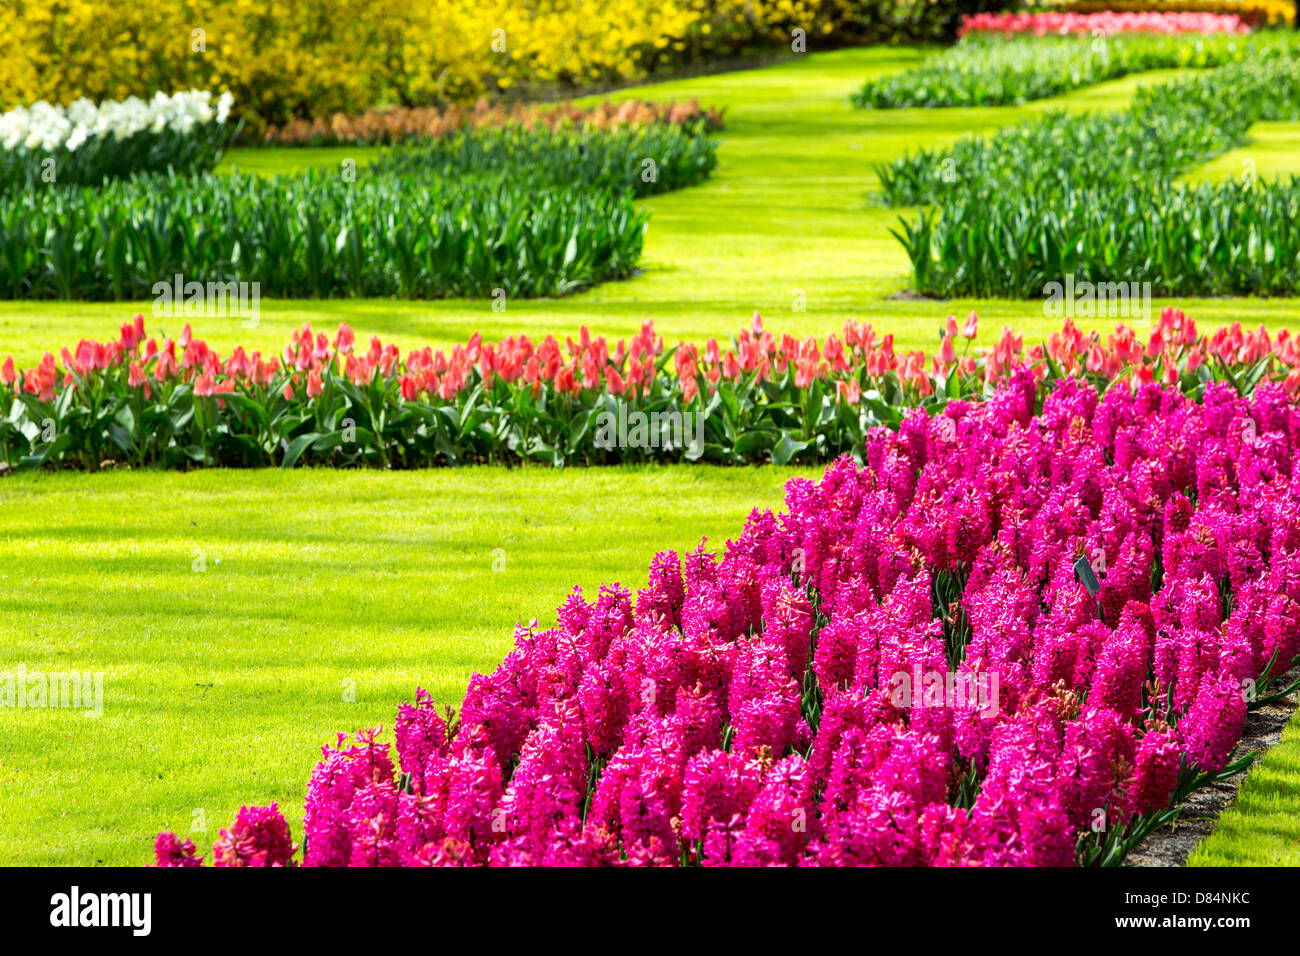 the world famous keukenhof gardens near lisse, holland, the best